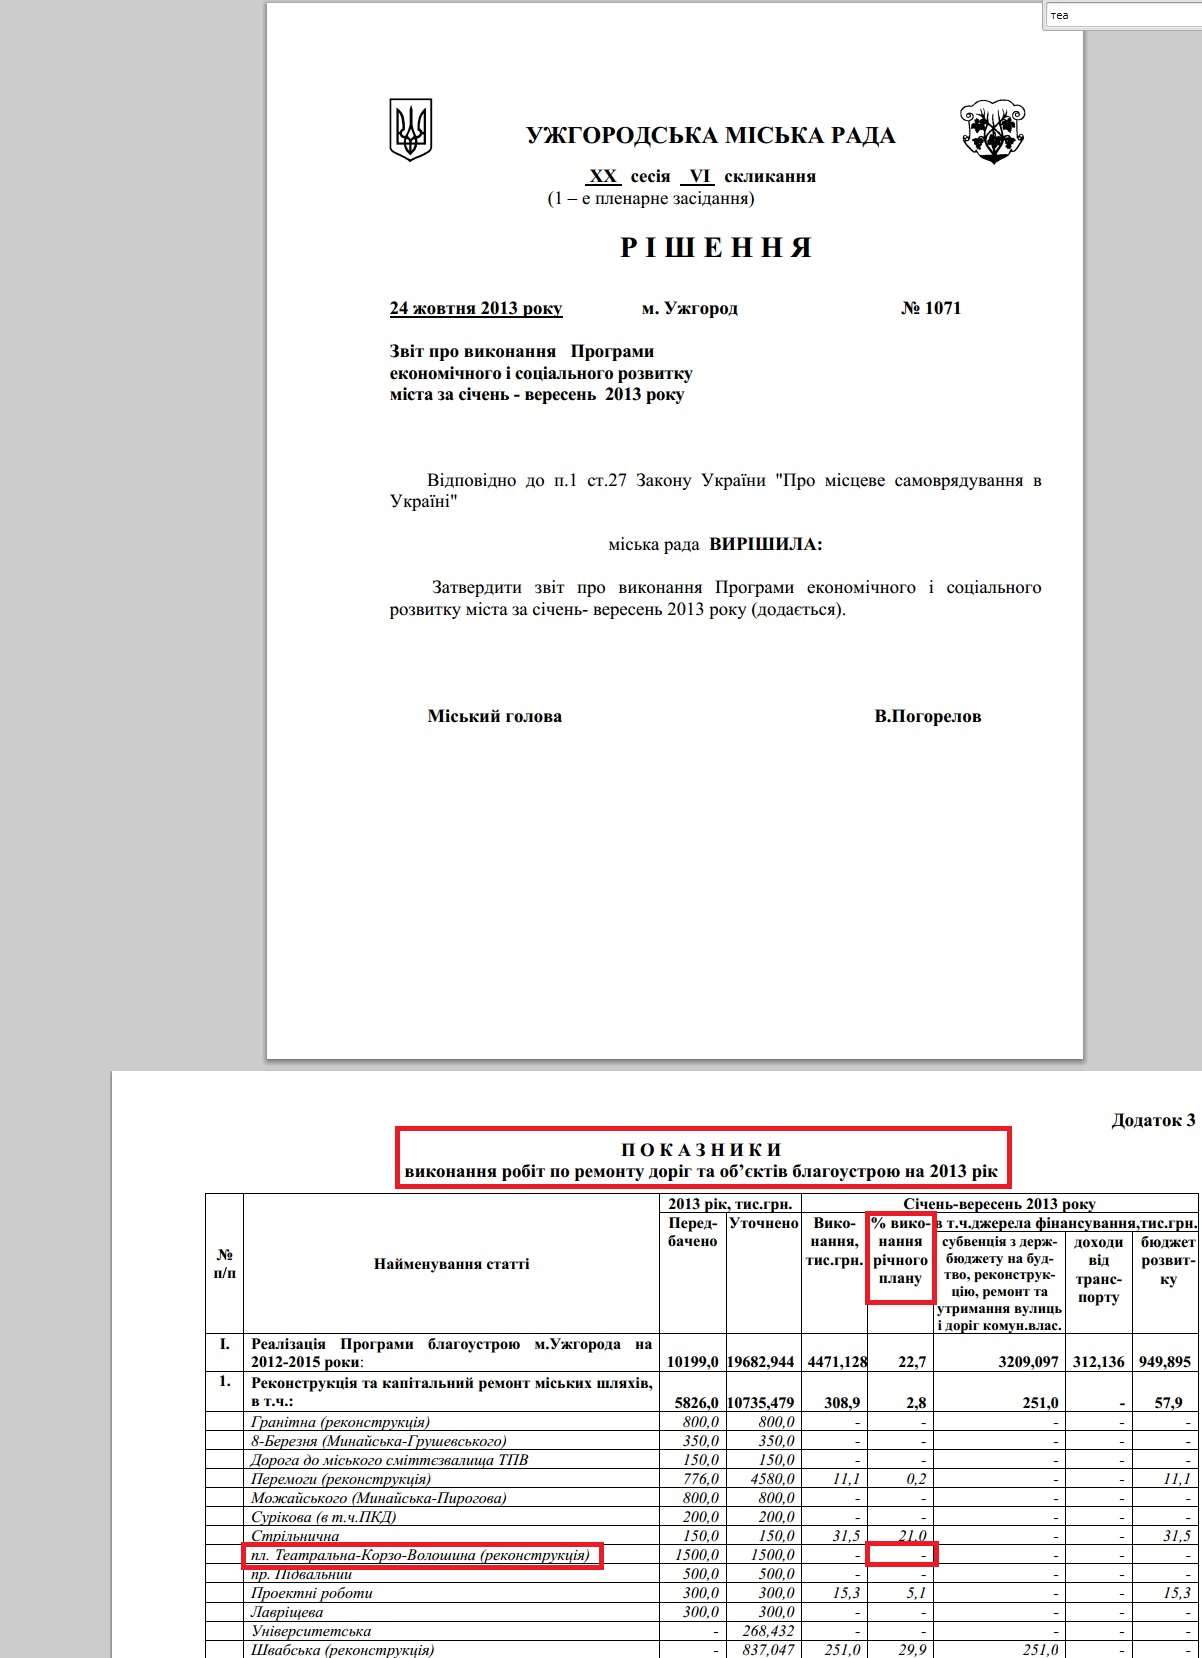 http://rada-uzhgorod.gov.ua/download/zvit/2013/1071_R_zvit_pro_vukon_programu%20soc-ekon_rozv_9_mis.pdf